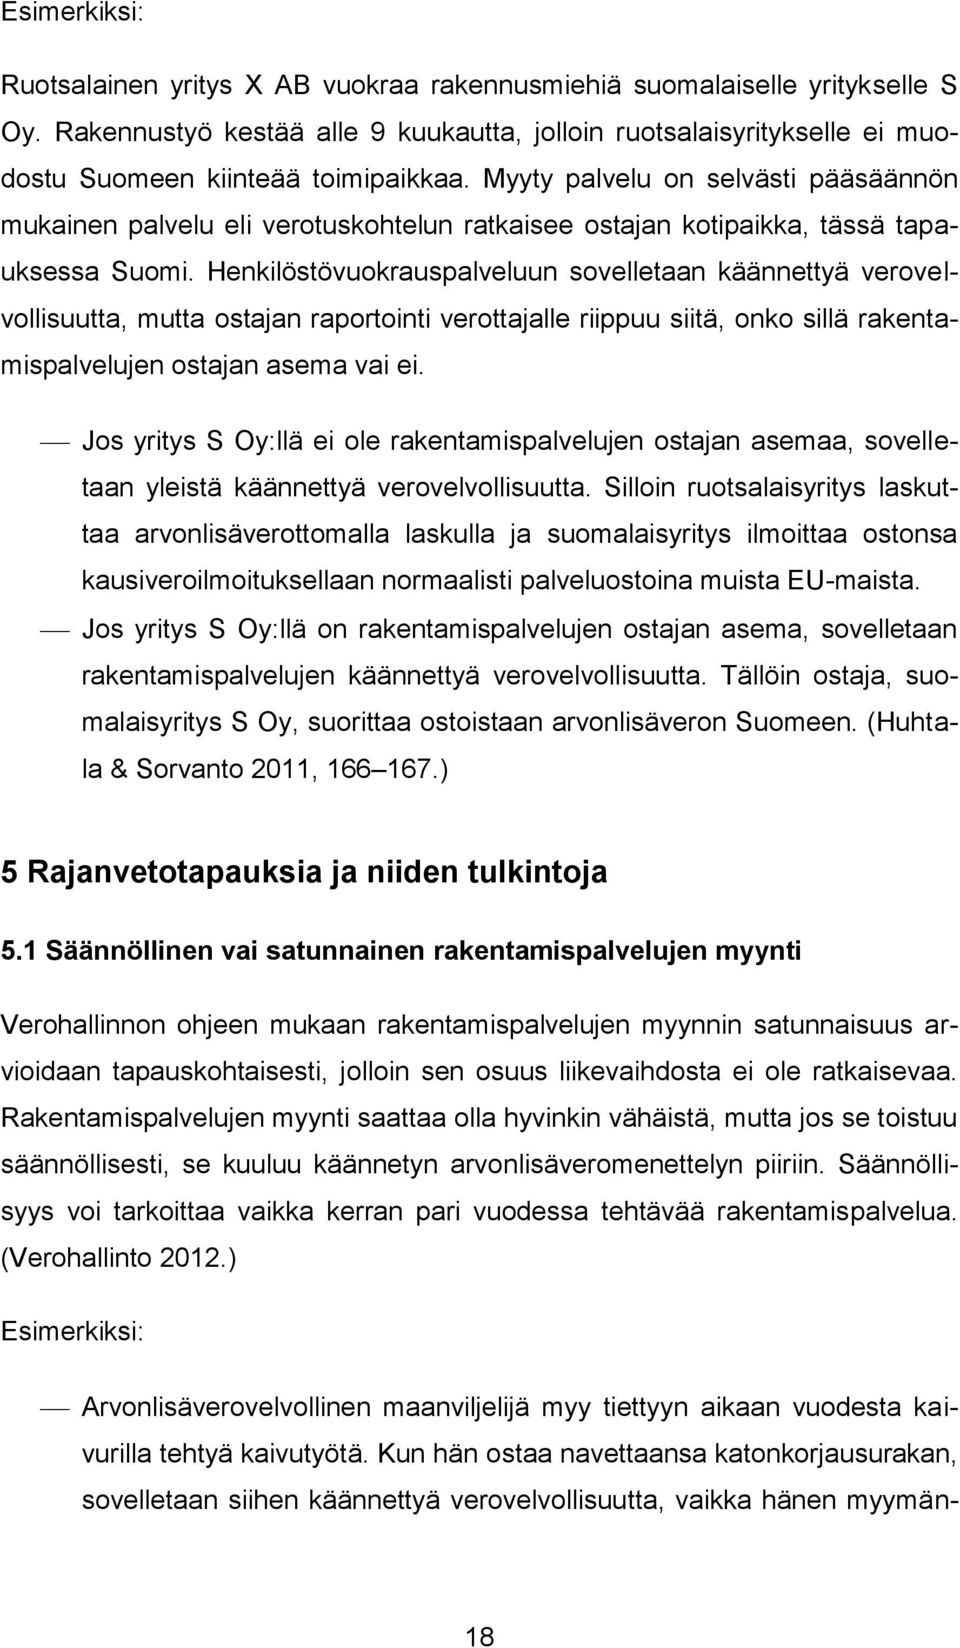 Myyty palvelu on selvästi pääsäännön mukainen palvelu eli verotuskohtelun ratkaisee ostajan kotipaikka, tässä tapauksessa Suomi.